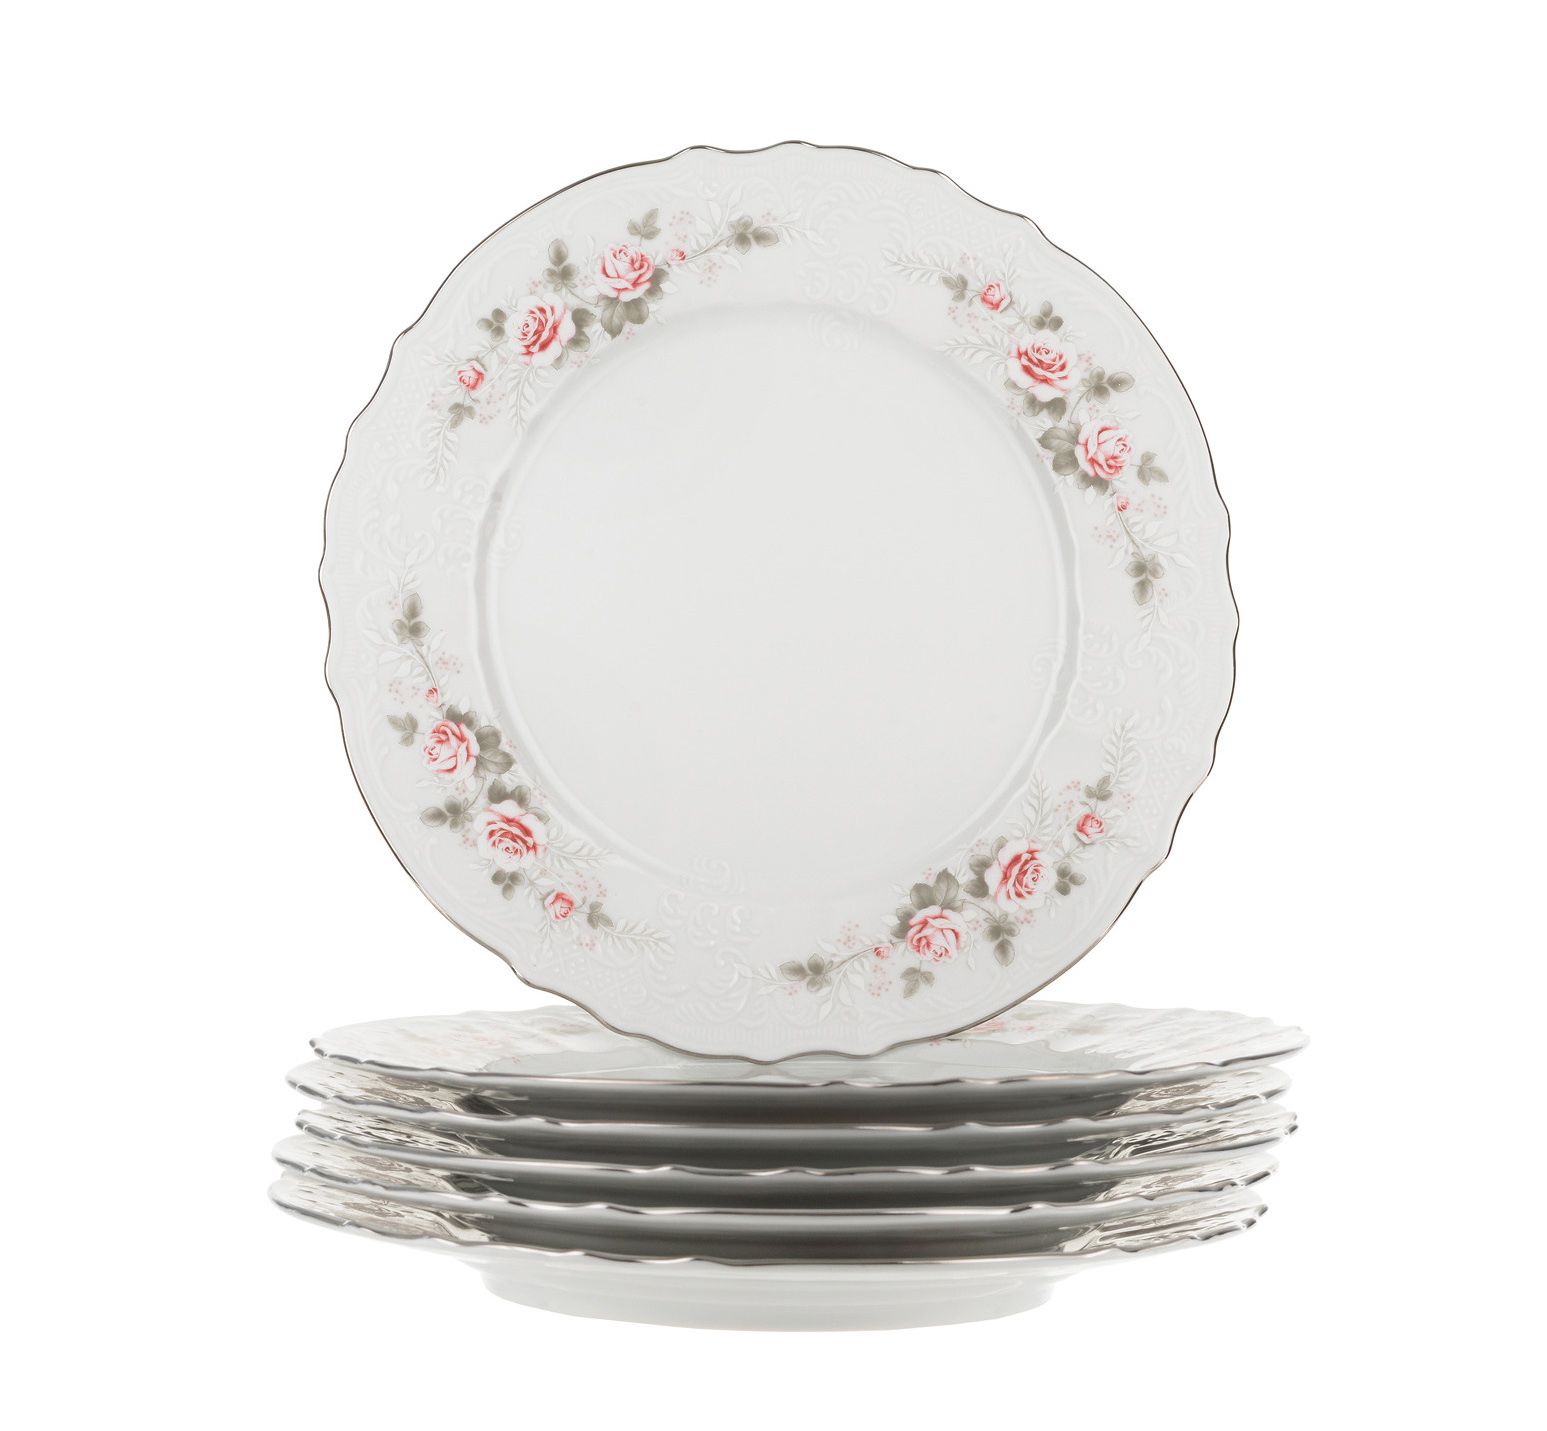 Тарелка обеденная фарфор. Bernadotte сервиз бледные розы.